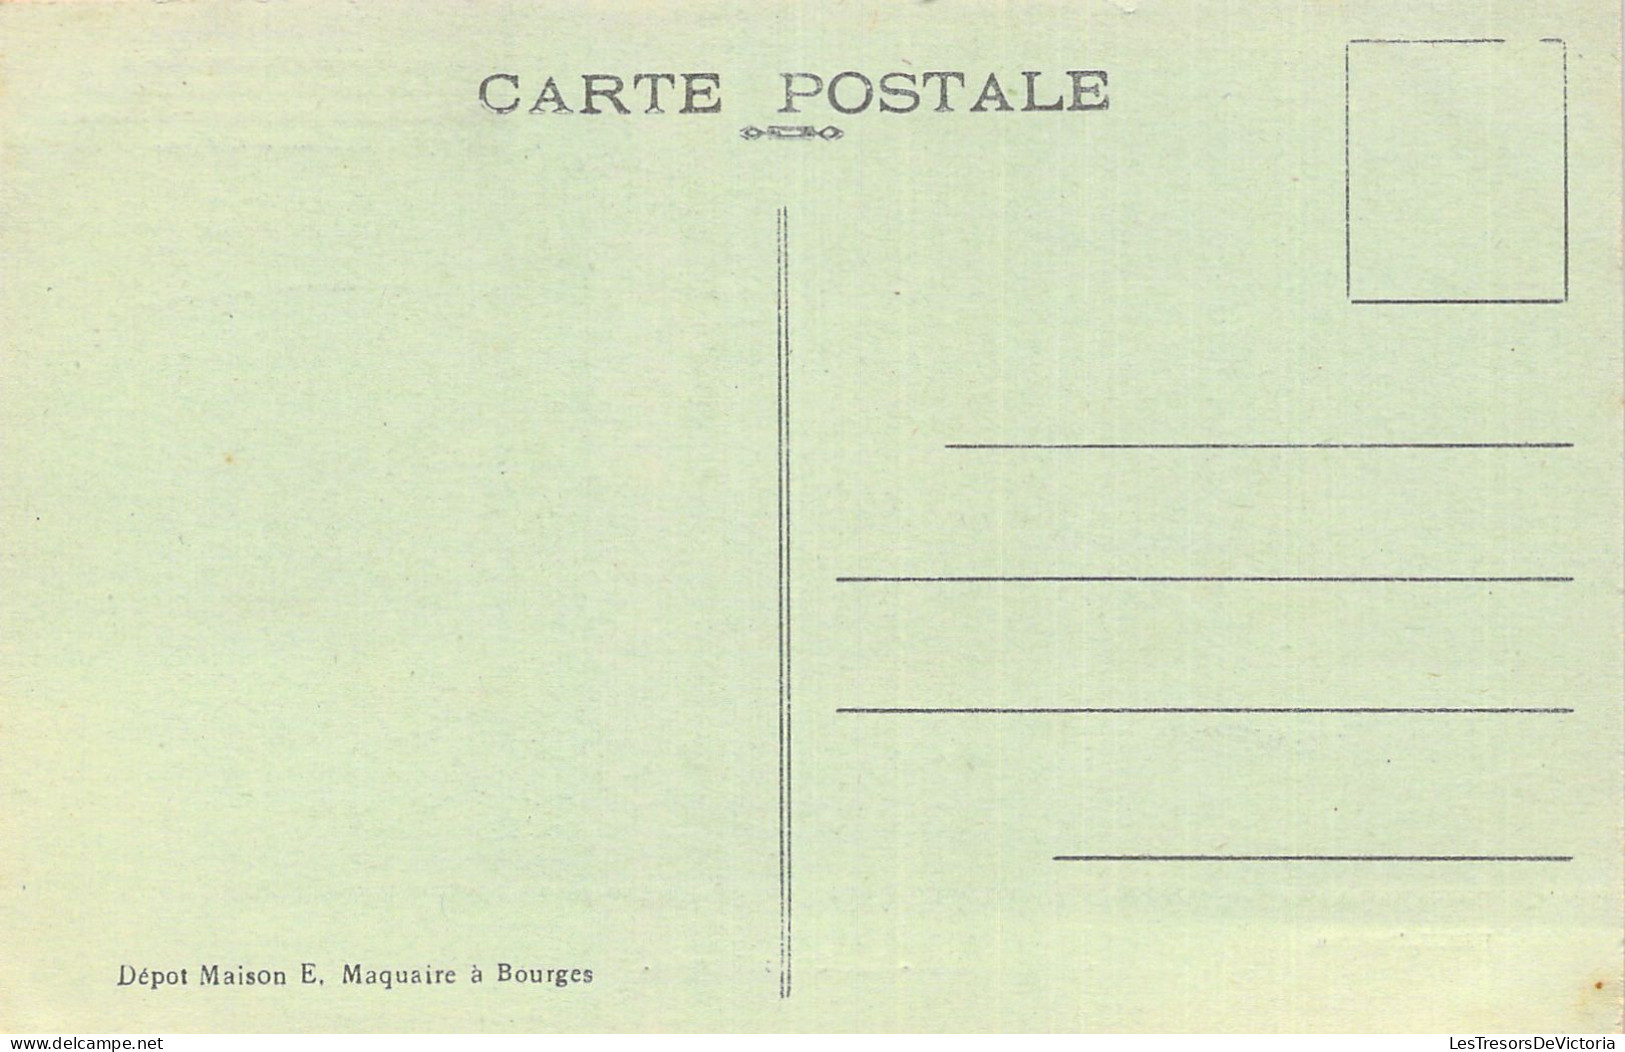 FOLKLORE - Les Chansons De Jean Rameau - La Charibaude - Carte Postale Ancienne - Musique